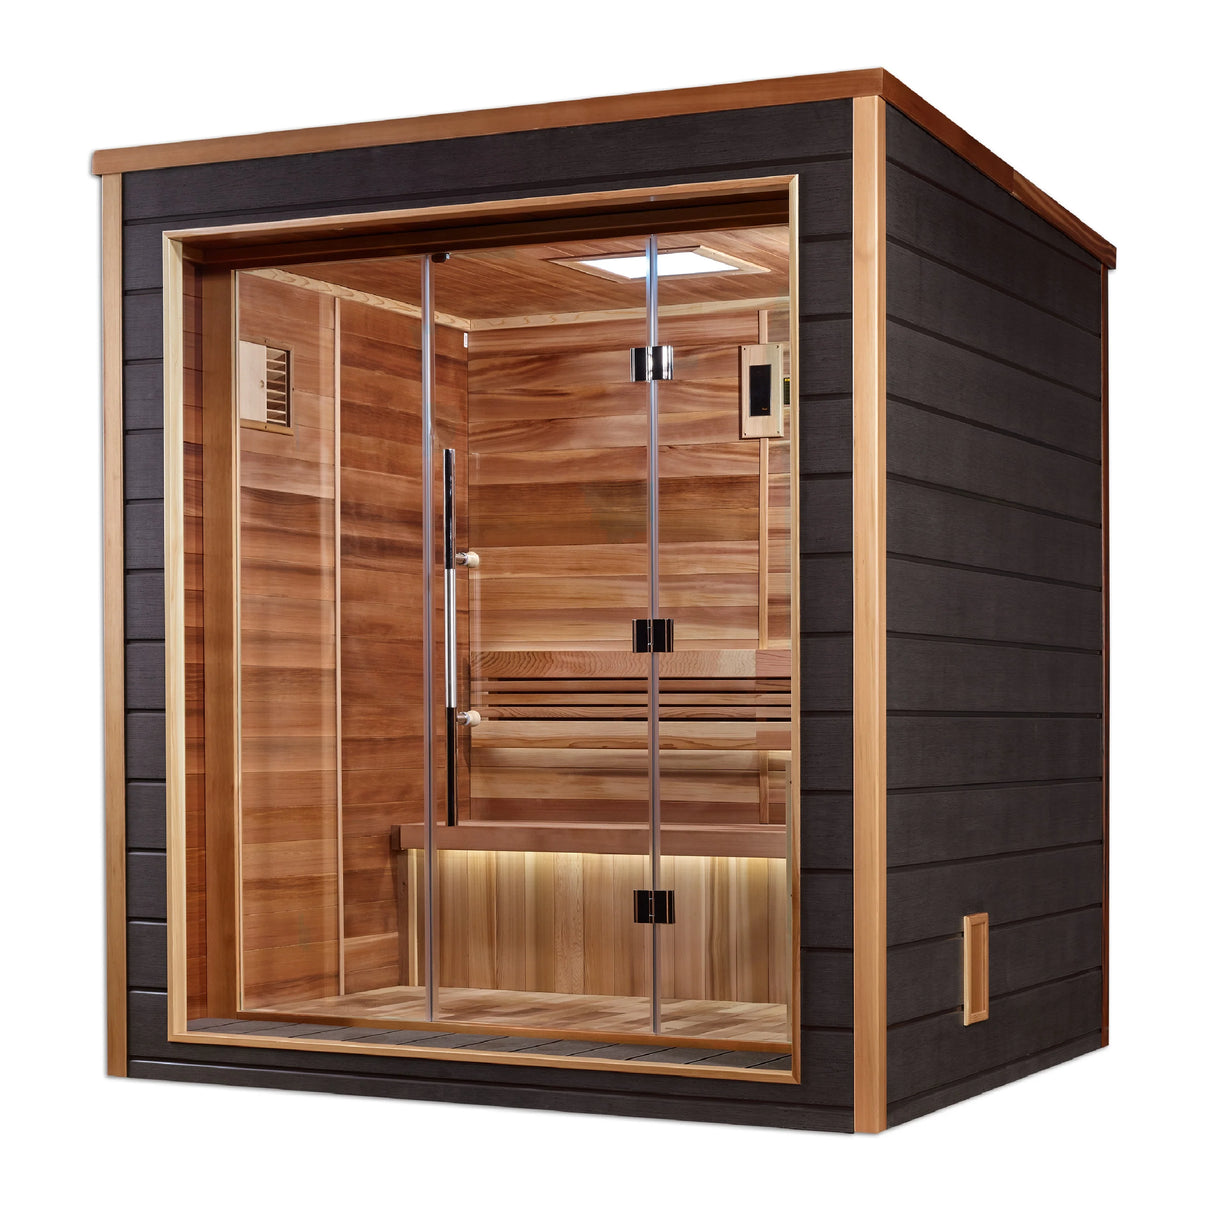 Golden Designs | Drammen 3-Person Outdoor-Indoor Traditional Steam Sauna (GDI-8203-01) - Canadian Red Cedar Interior